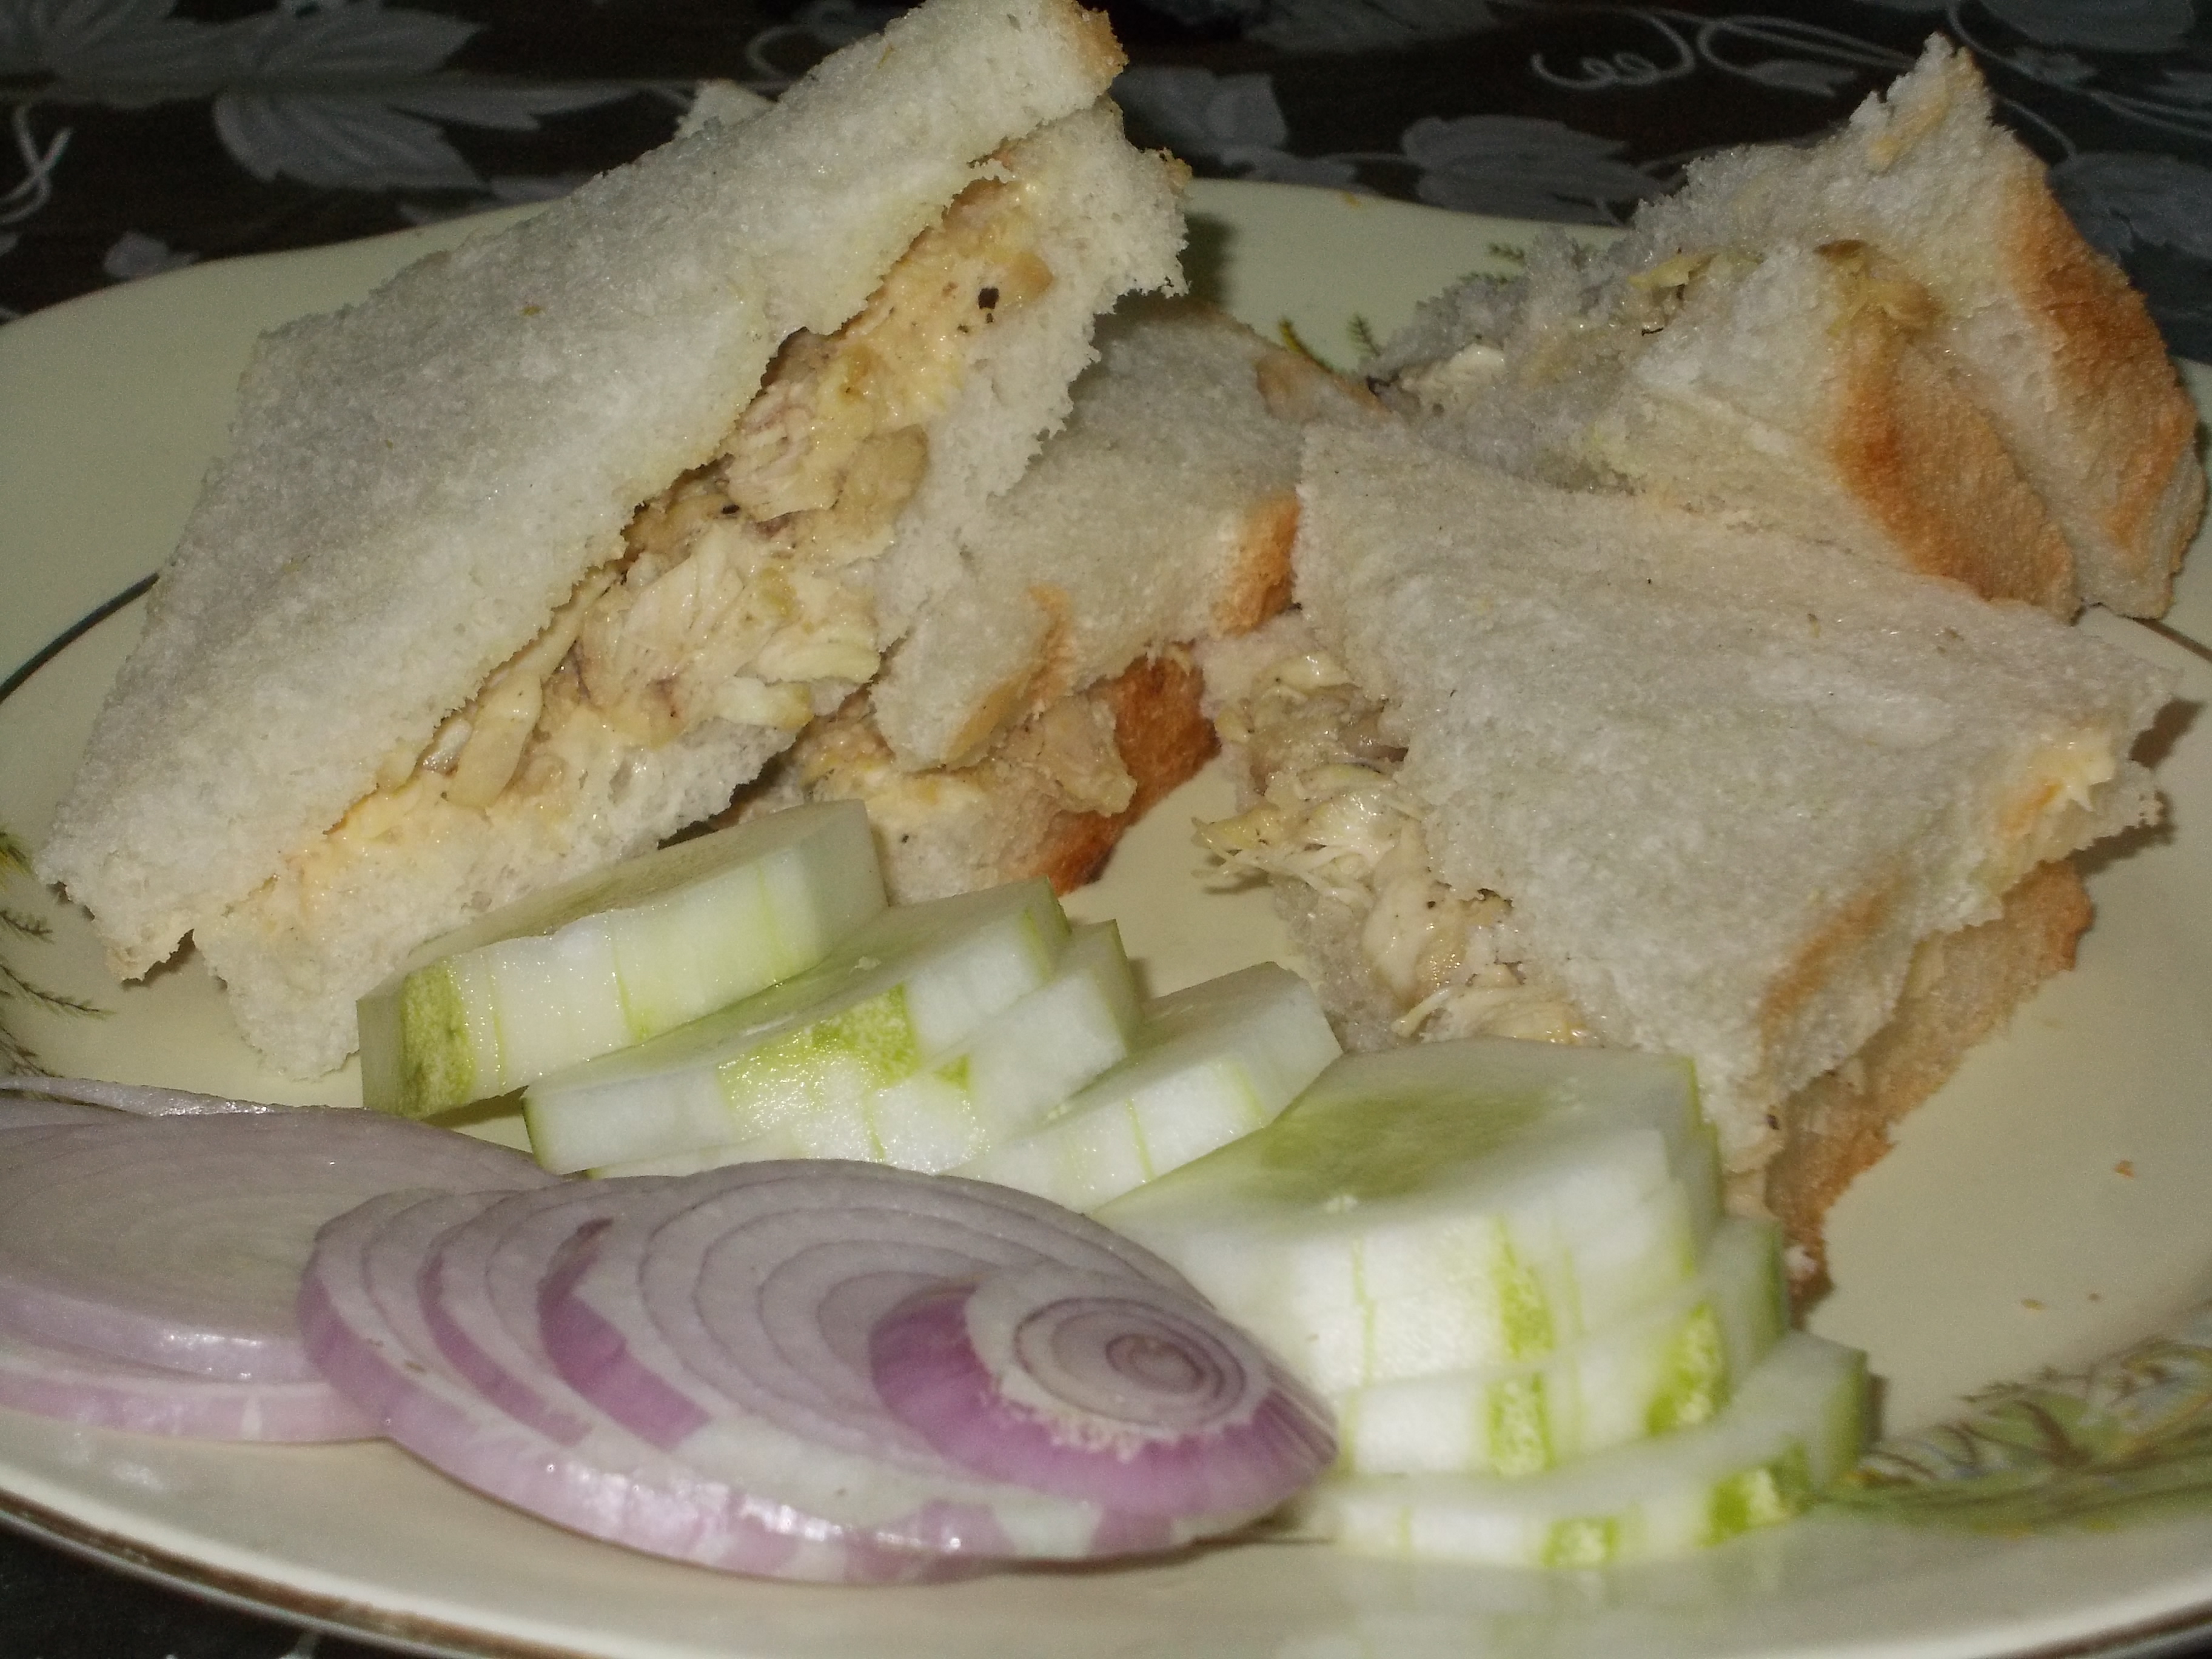 Chicken Sandwich Recipe